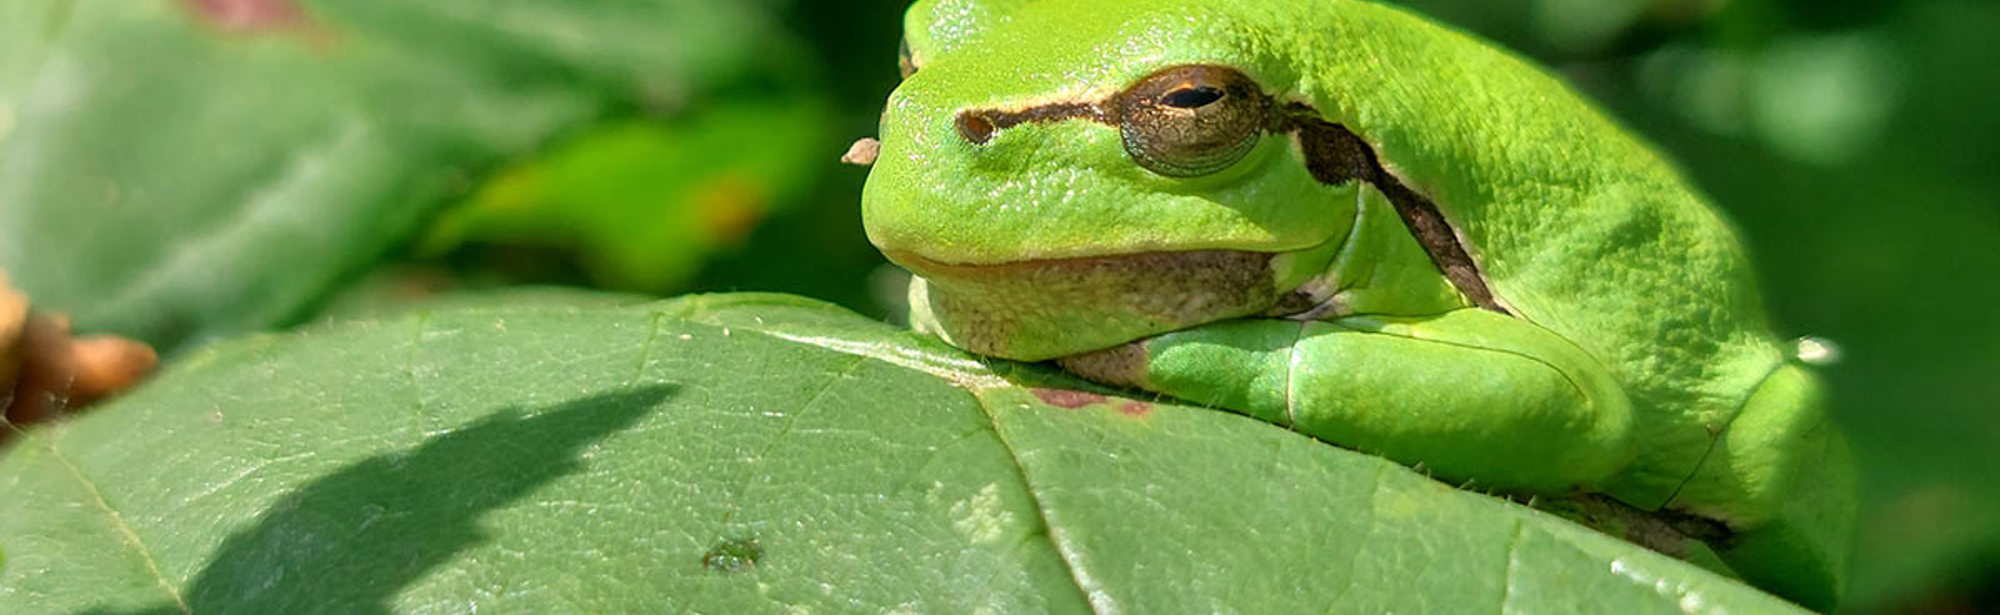 Close-up foto van een groene boomkikker die op een blad ligt 